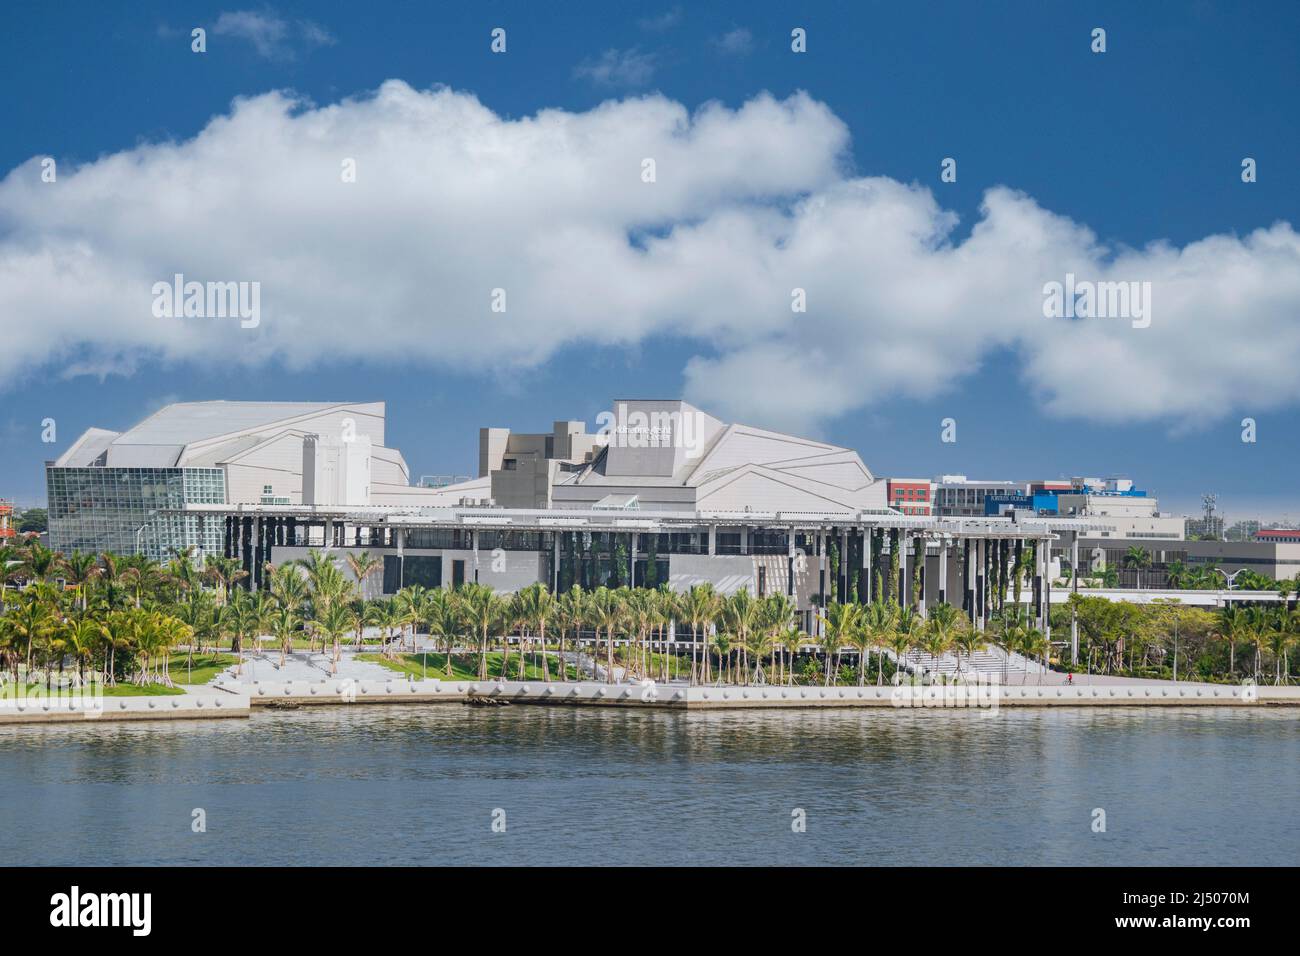 Das Adrienne Arsht Center for the Performing Arts of Miami-Dade County am Wasser vom Deck eines Kreuzfahrtschiffs aus gesehen, das von Miami, Florida, abfährt. Stockfoto